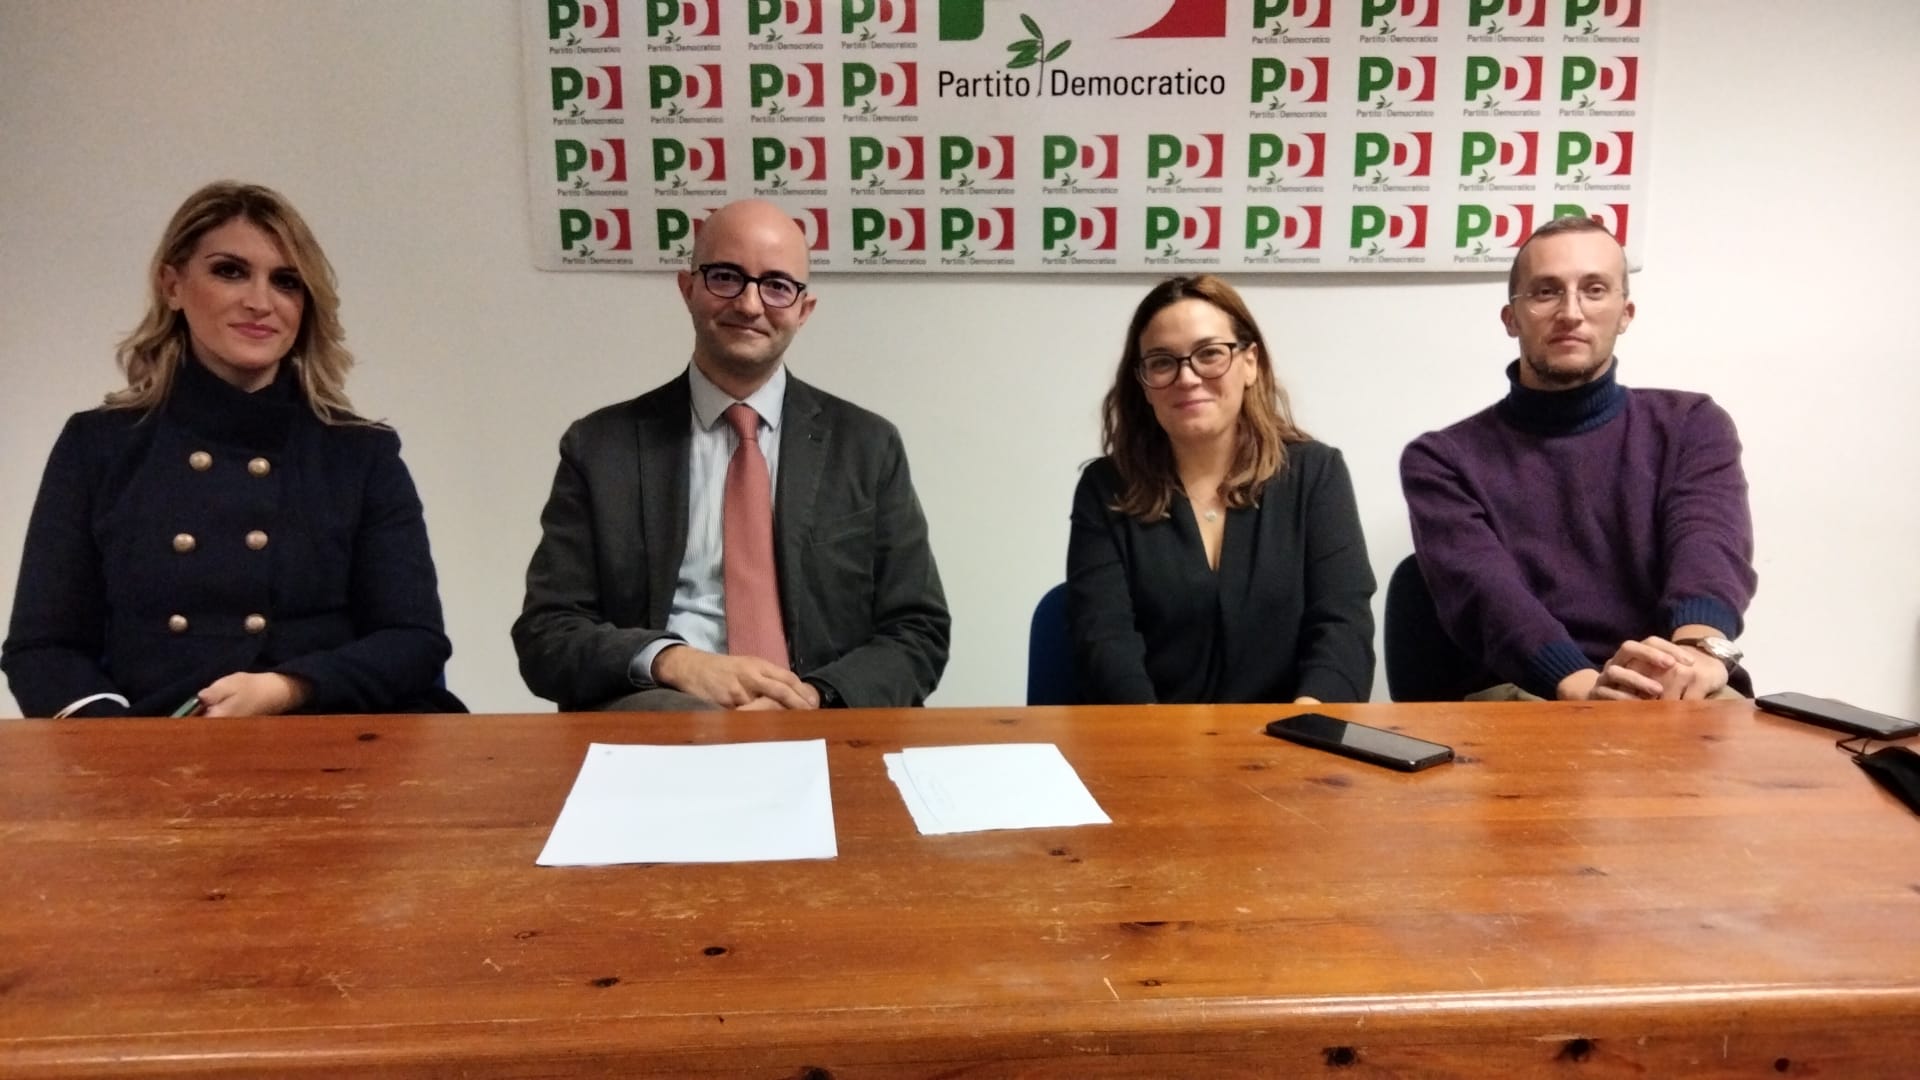 Benevento| Consiglio comunale, PD:  la capogruppo è Floriana Fioretti